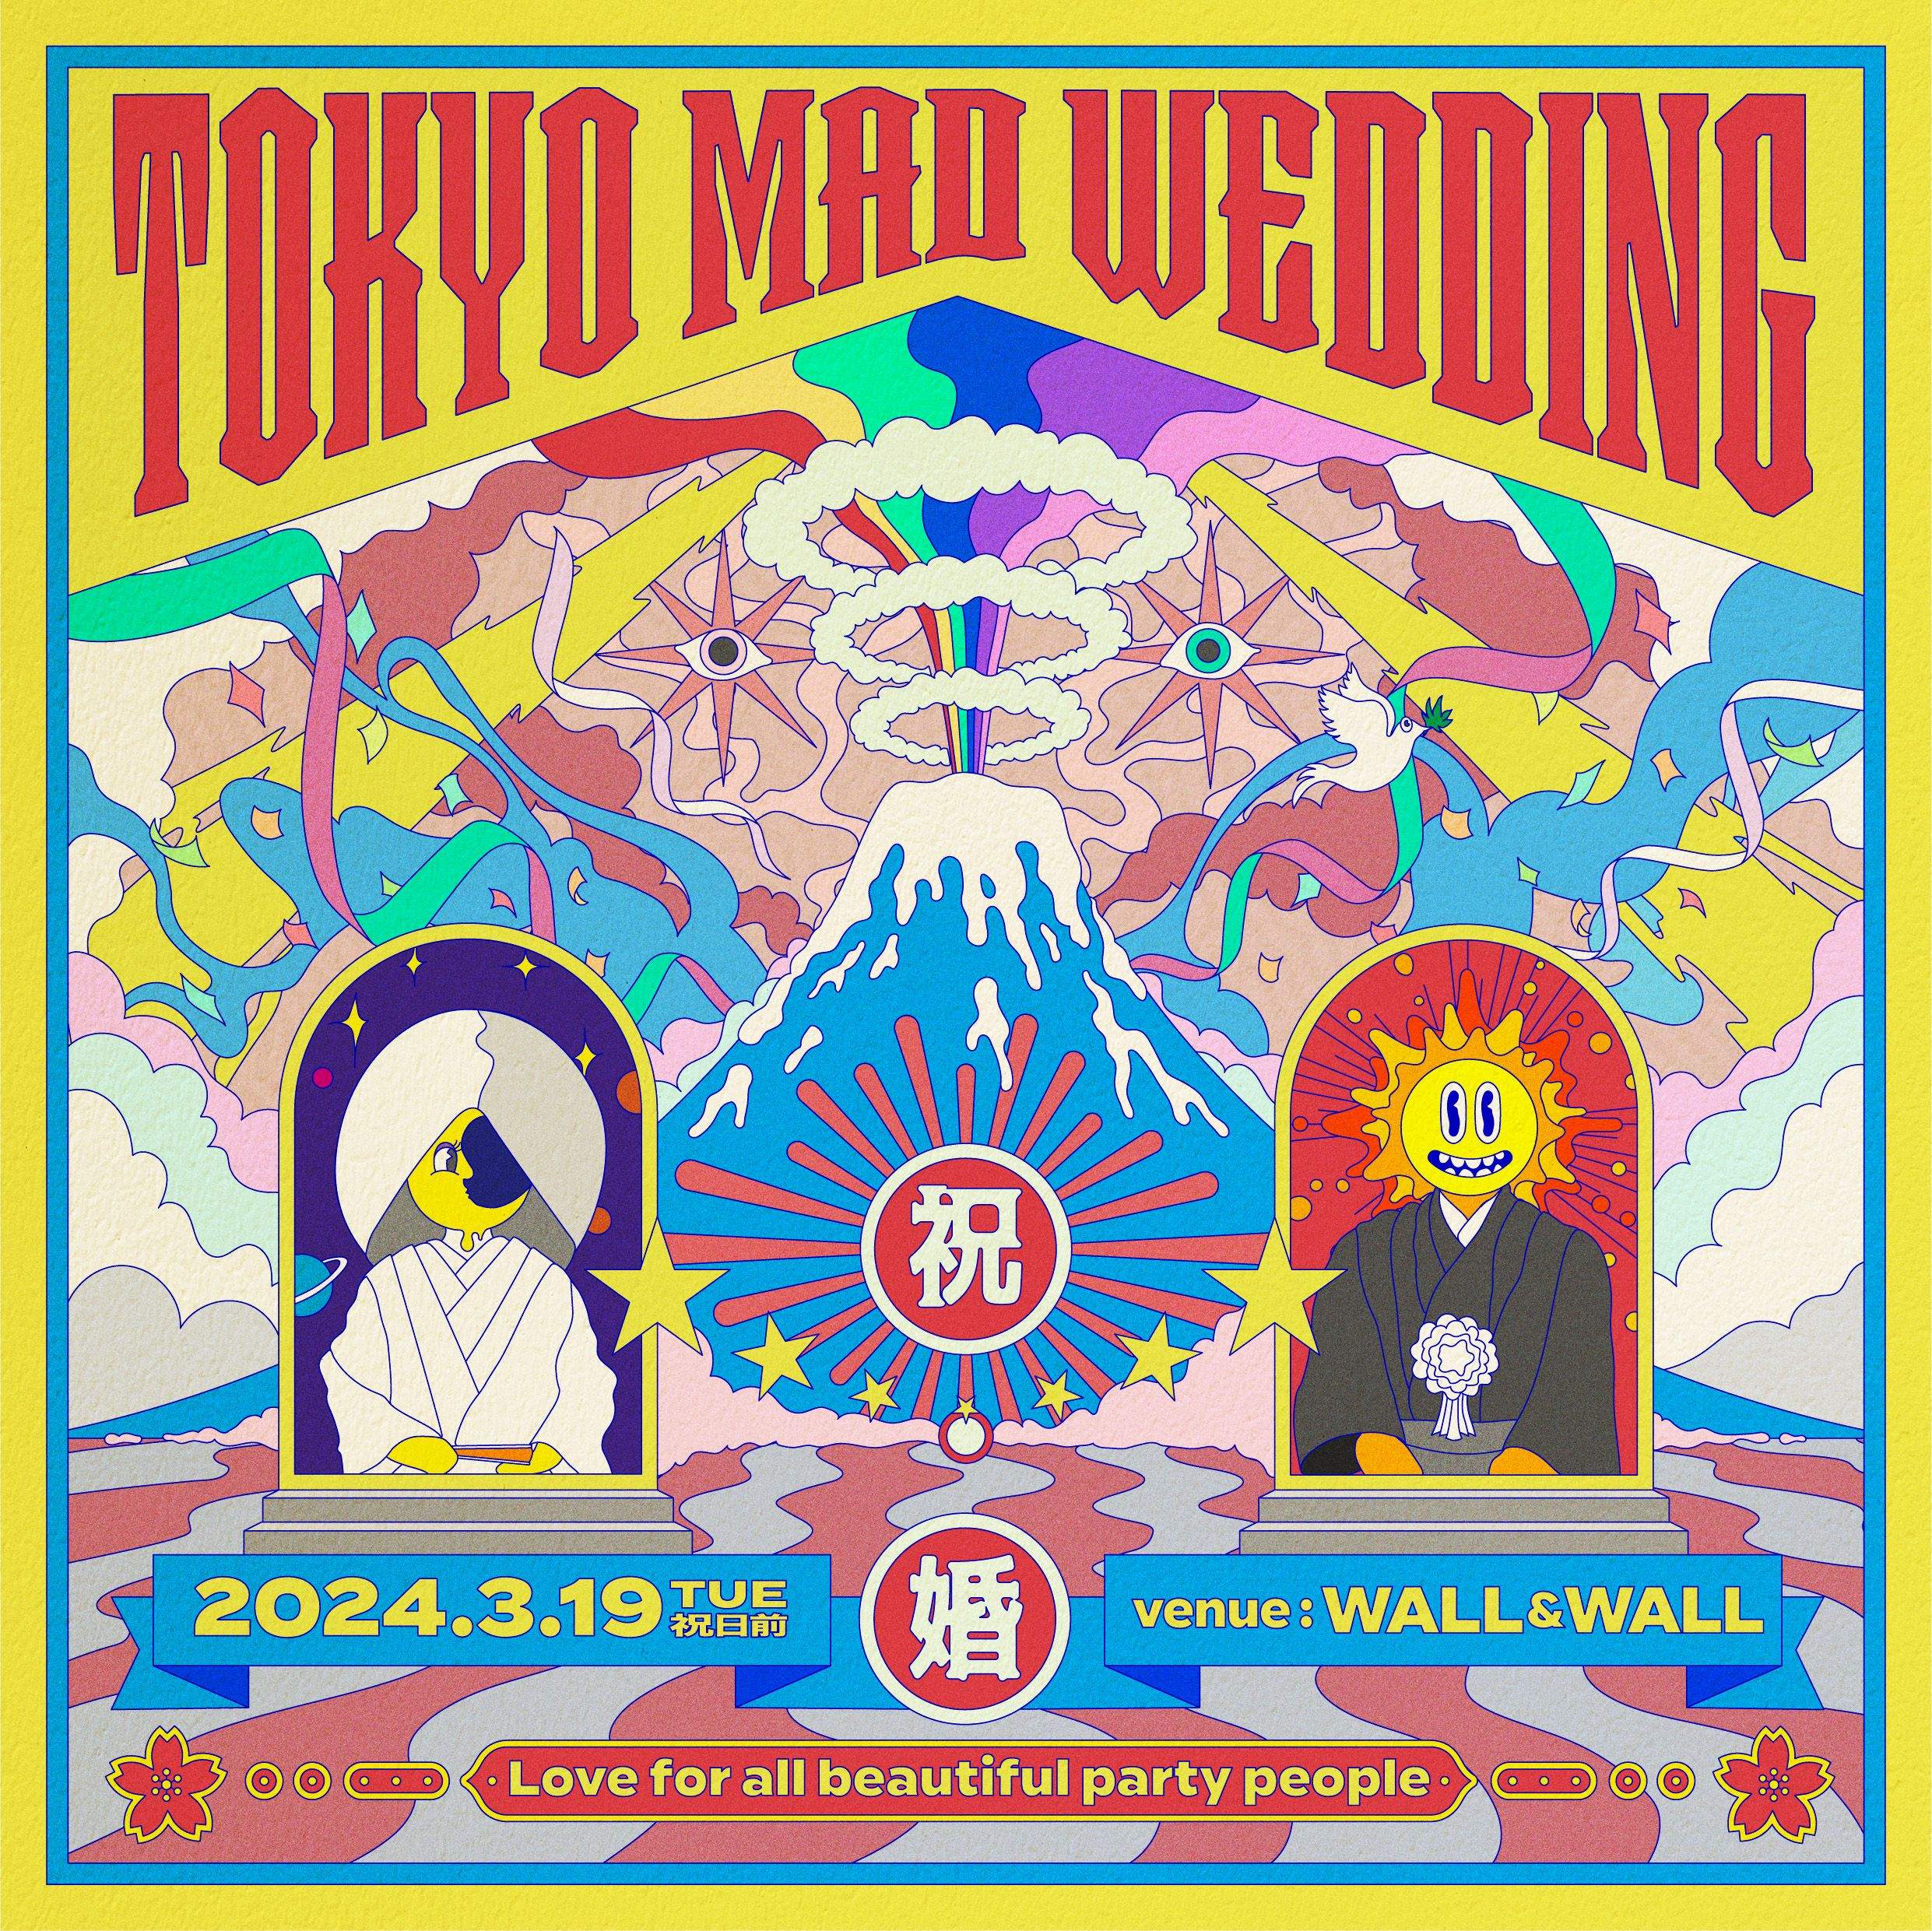 TOKYO MAD WEDDING - Página frontal